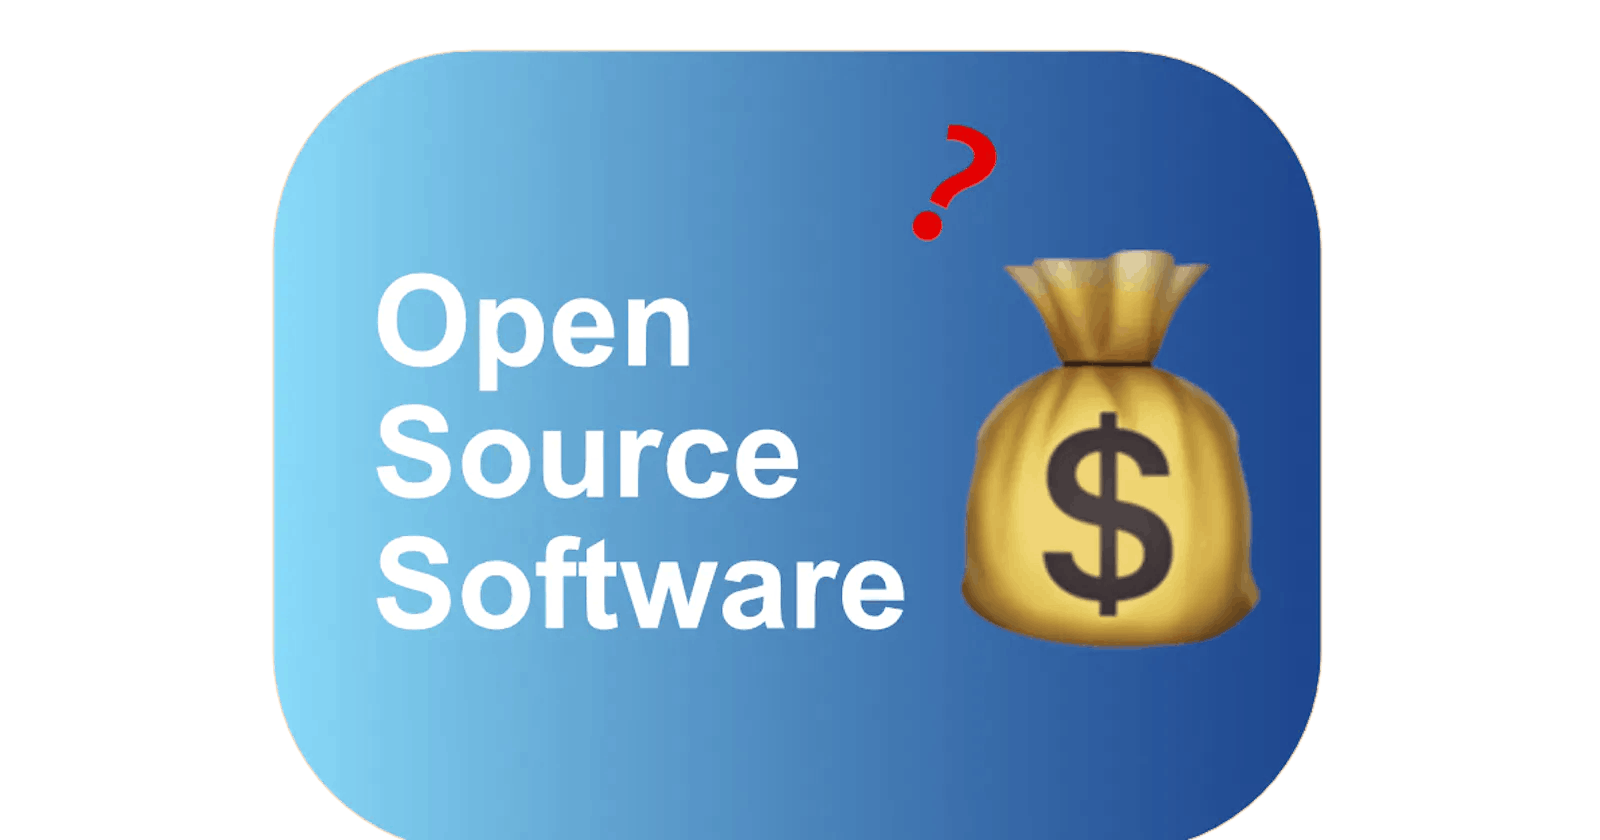 오픈소스 소프트웨어를 사용하기 위해 당신이 지불해야 하는 금액 - 기술 변호사의 관점 (한국어 번역)